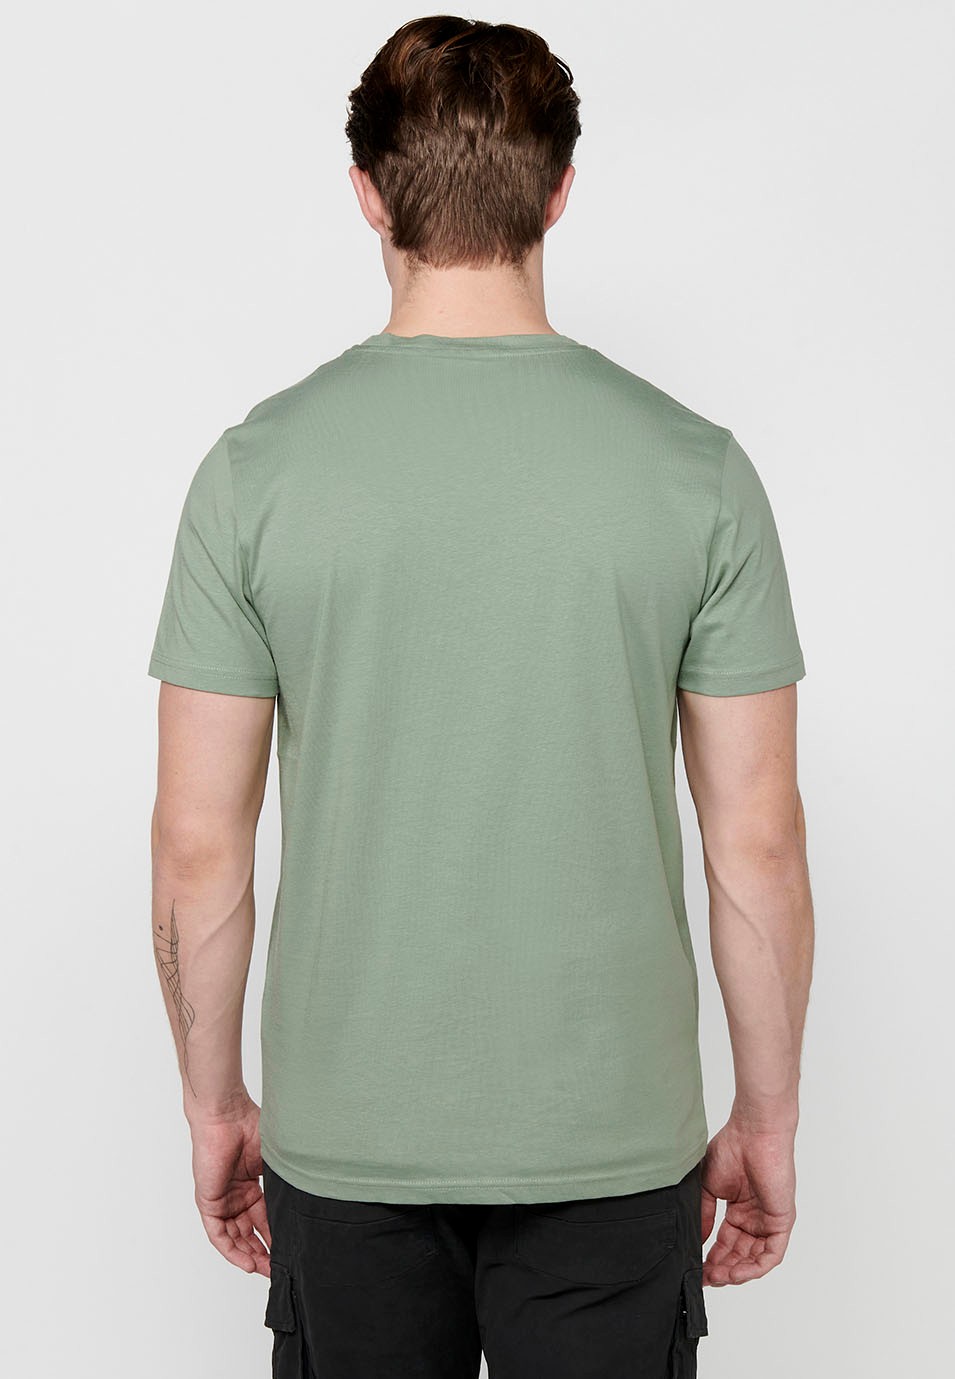 Men's Khaki Color Round Neck Cotton Short Sleeve T-shirt 2